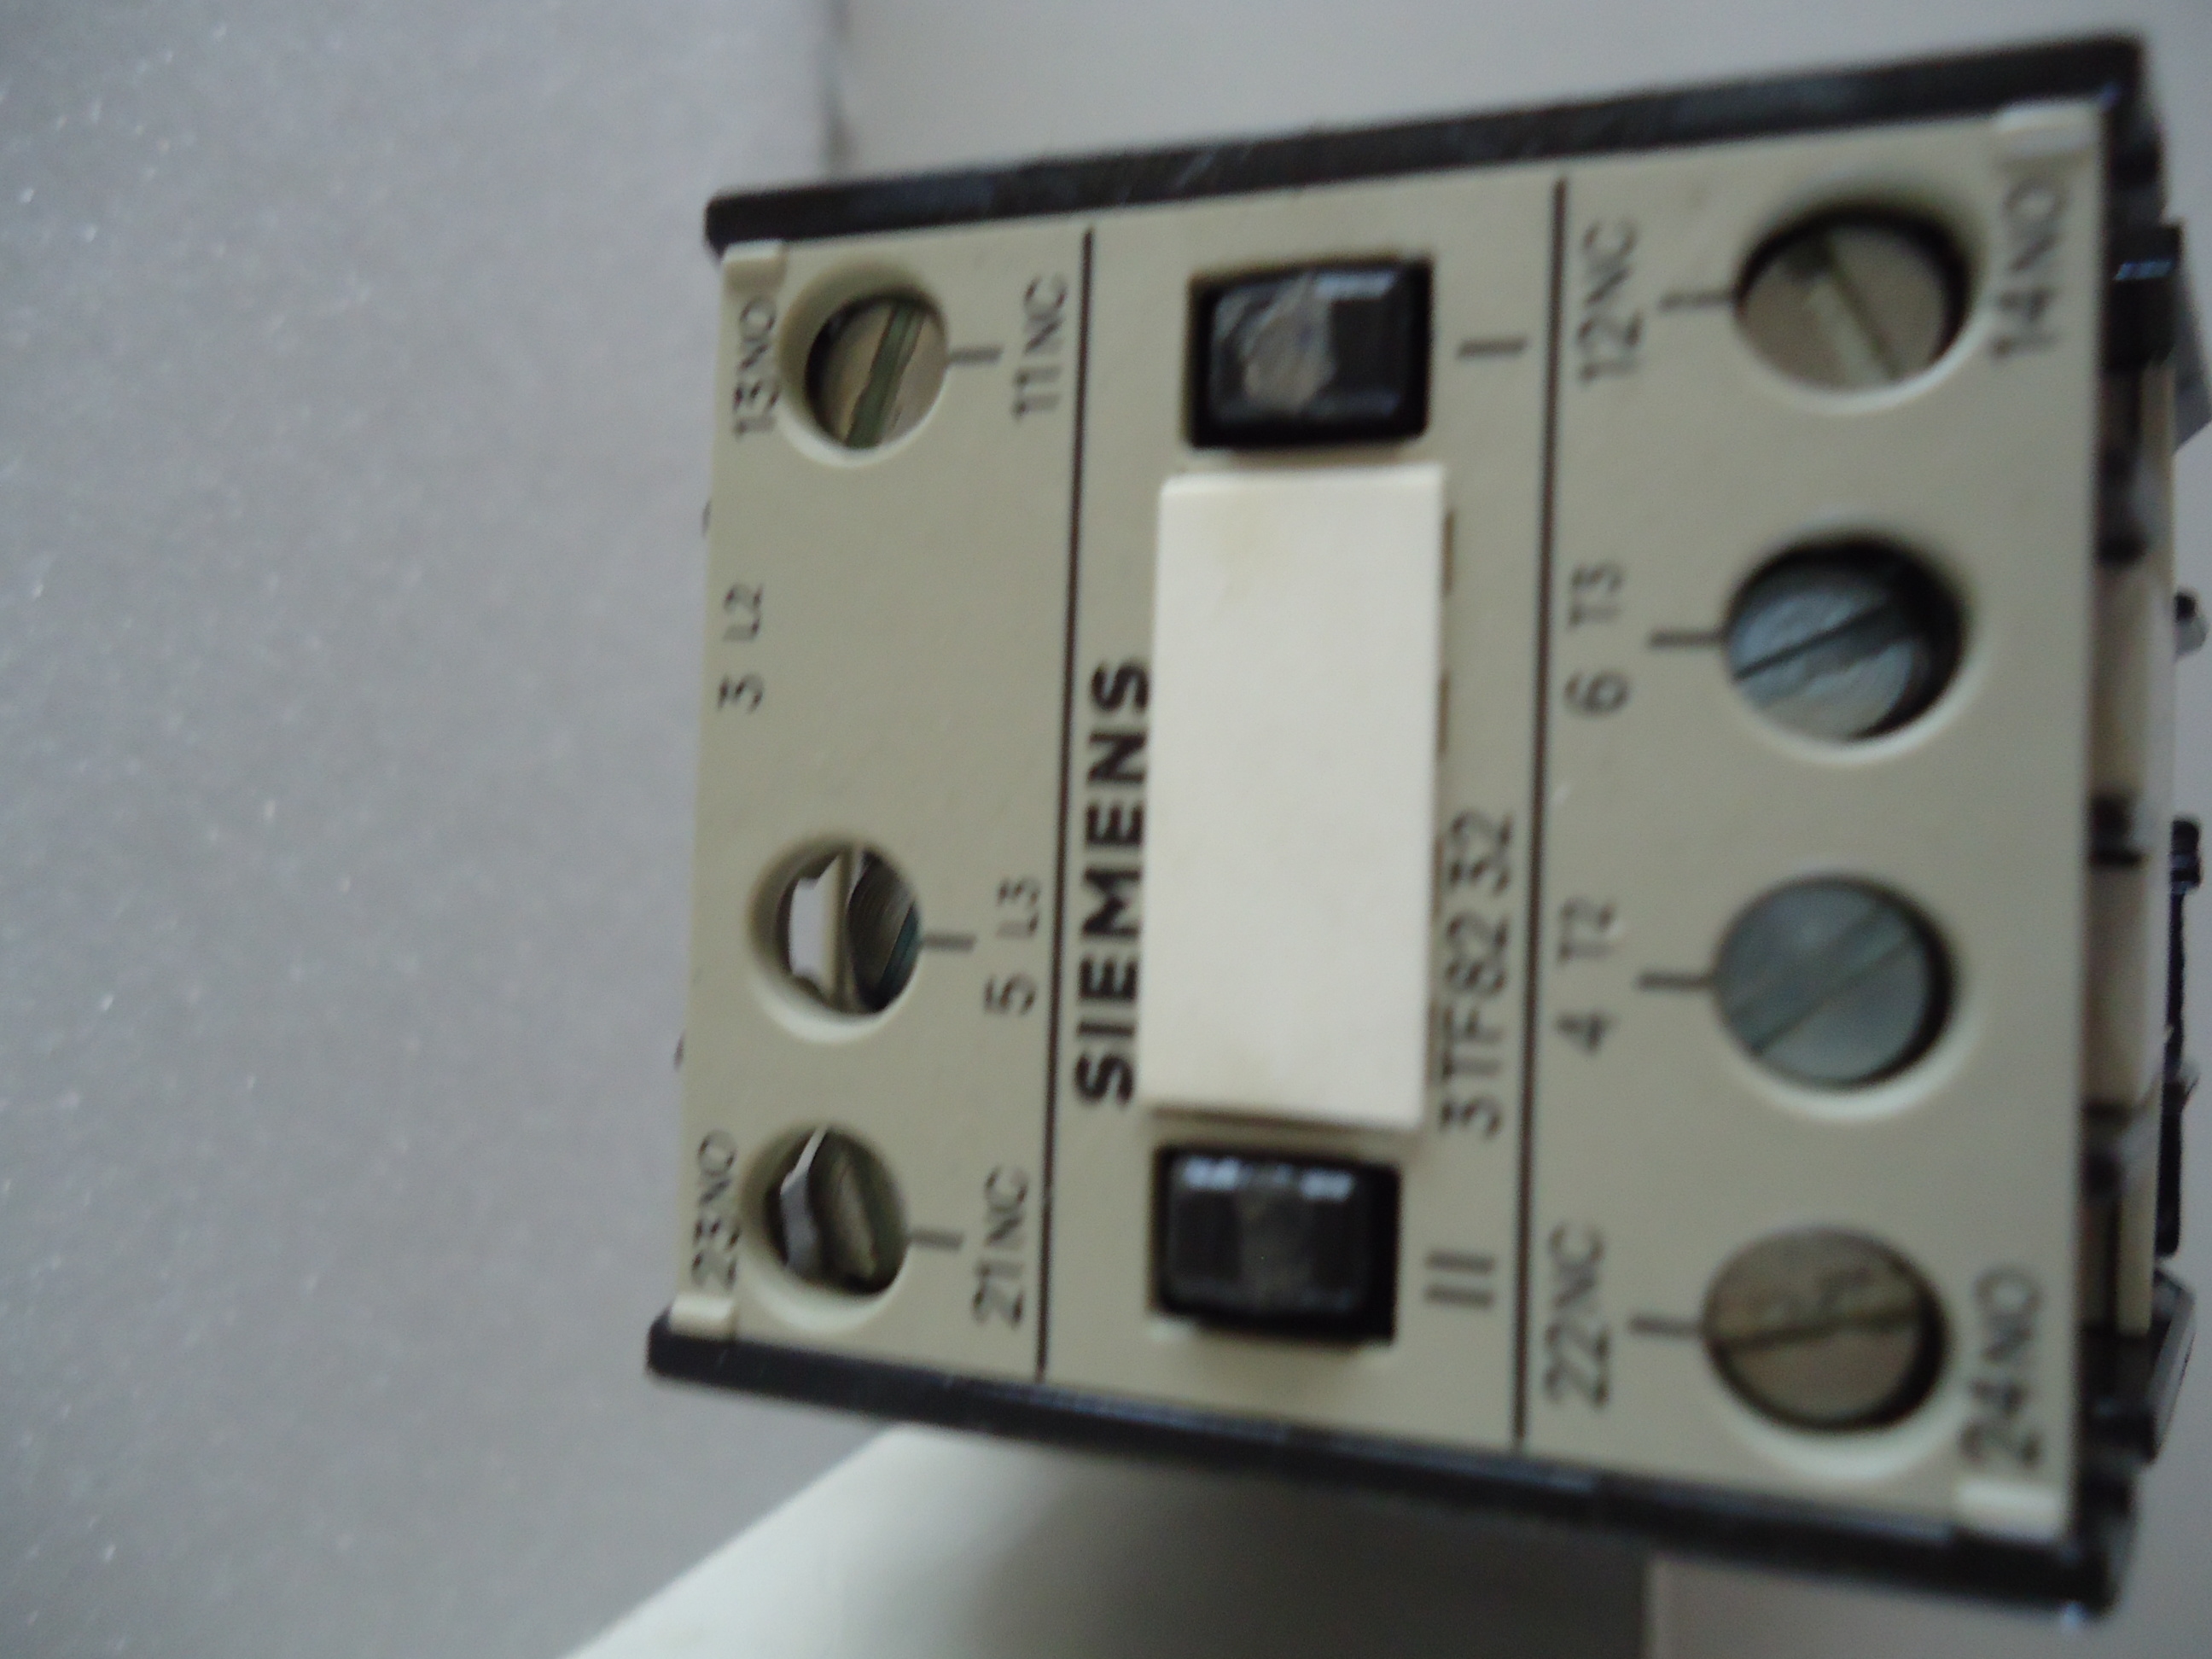 3TF82 32-0AF0 110 VAc 50 hz Siemens Wendesschutz contator